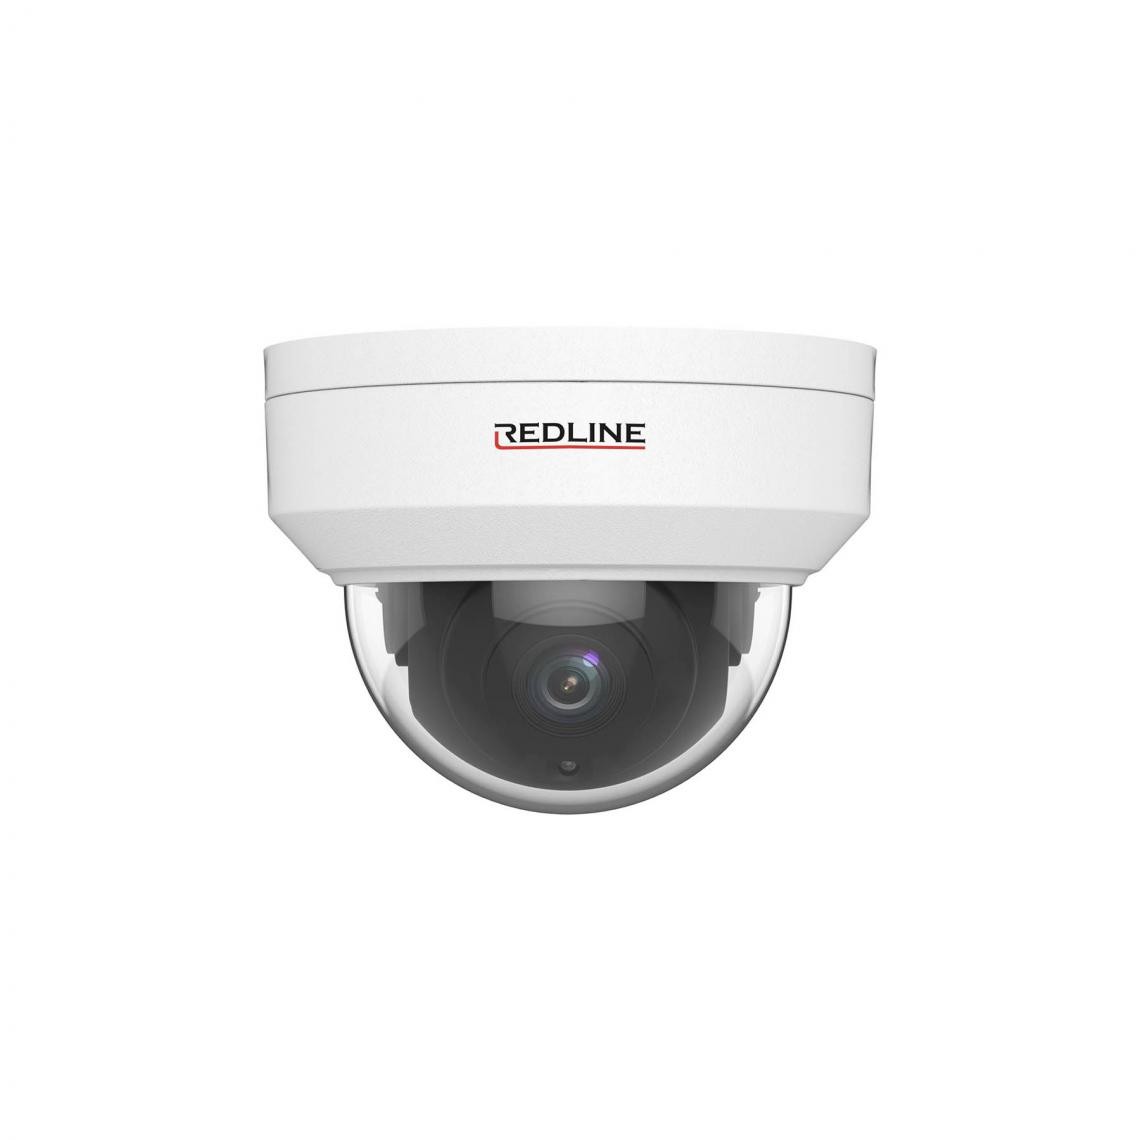 Redline - Caméra IP - Redline Pro Series IPC-865U - 8 MP 20 fps, 5MP 30 fps , 2160p, Dôme Antivandalisme, Détection de mouvement, 0Lux avec IR - Caméra de surveillance connectée